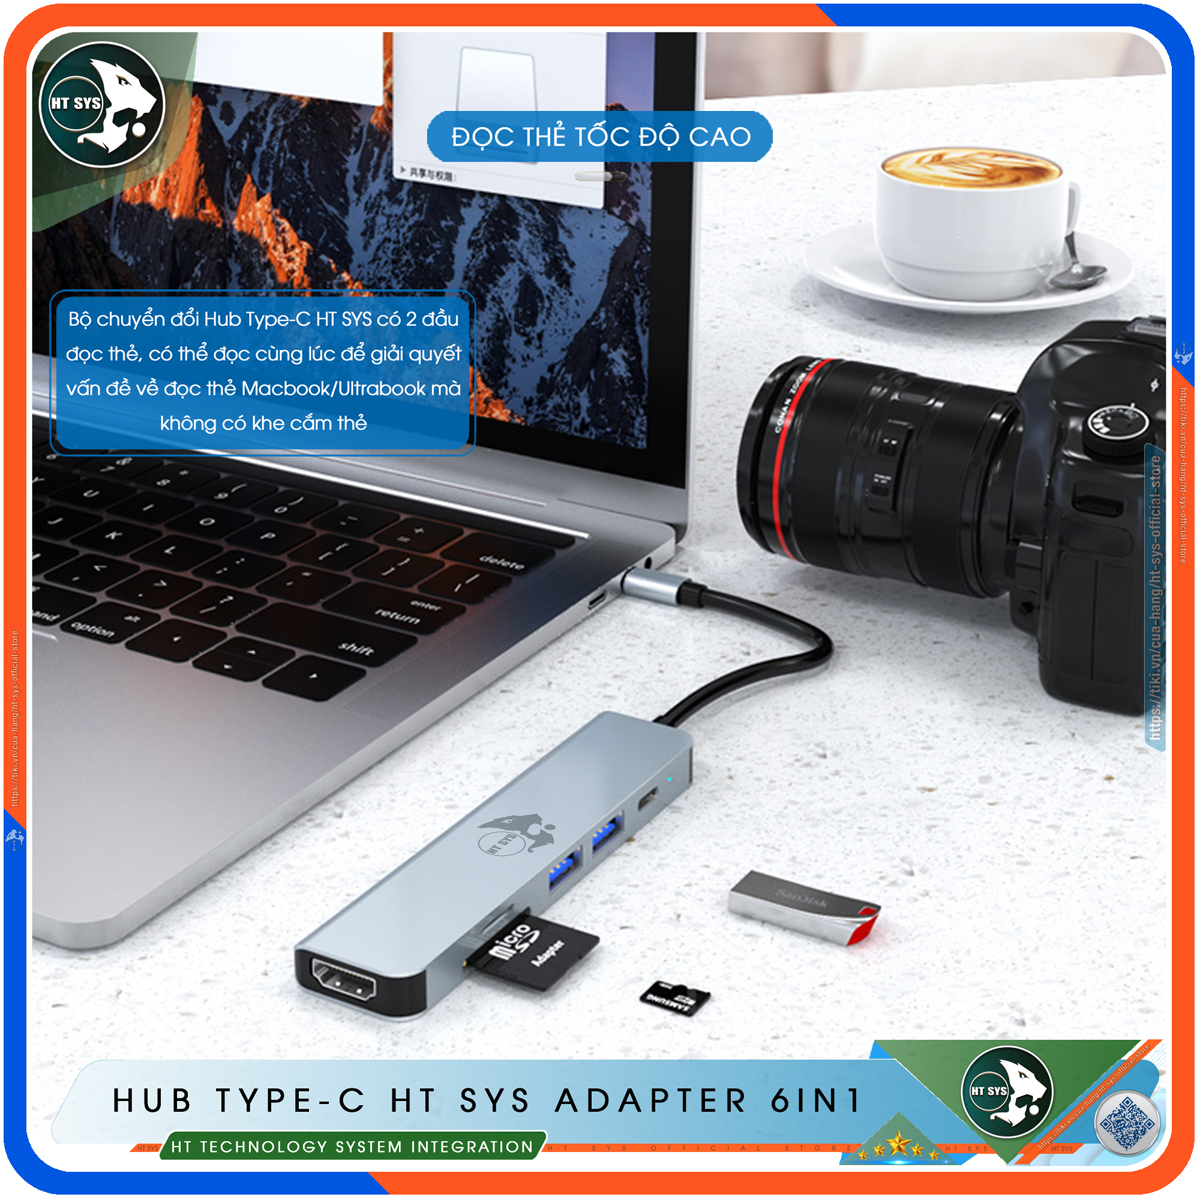 Hub Type C To HDMI HT SYS 6in1 Chuẩn HDTV - Hub Chuyển Đổi USB Type-C 6 Cổng - HDMI 4K, USB 3.0, Sạc Nhanh Type C PD, Khe Đọc Thẻ SD/TF - Kết Nối Tốc Độ Cao - Dành Cho MacBook, Tivi, Laptop, PC, Máy Tính Bảng, Smartphone – Hàng Chính Hãng